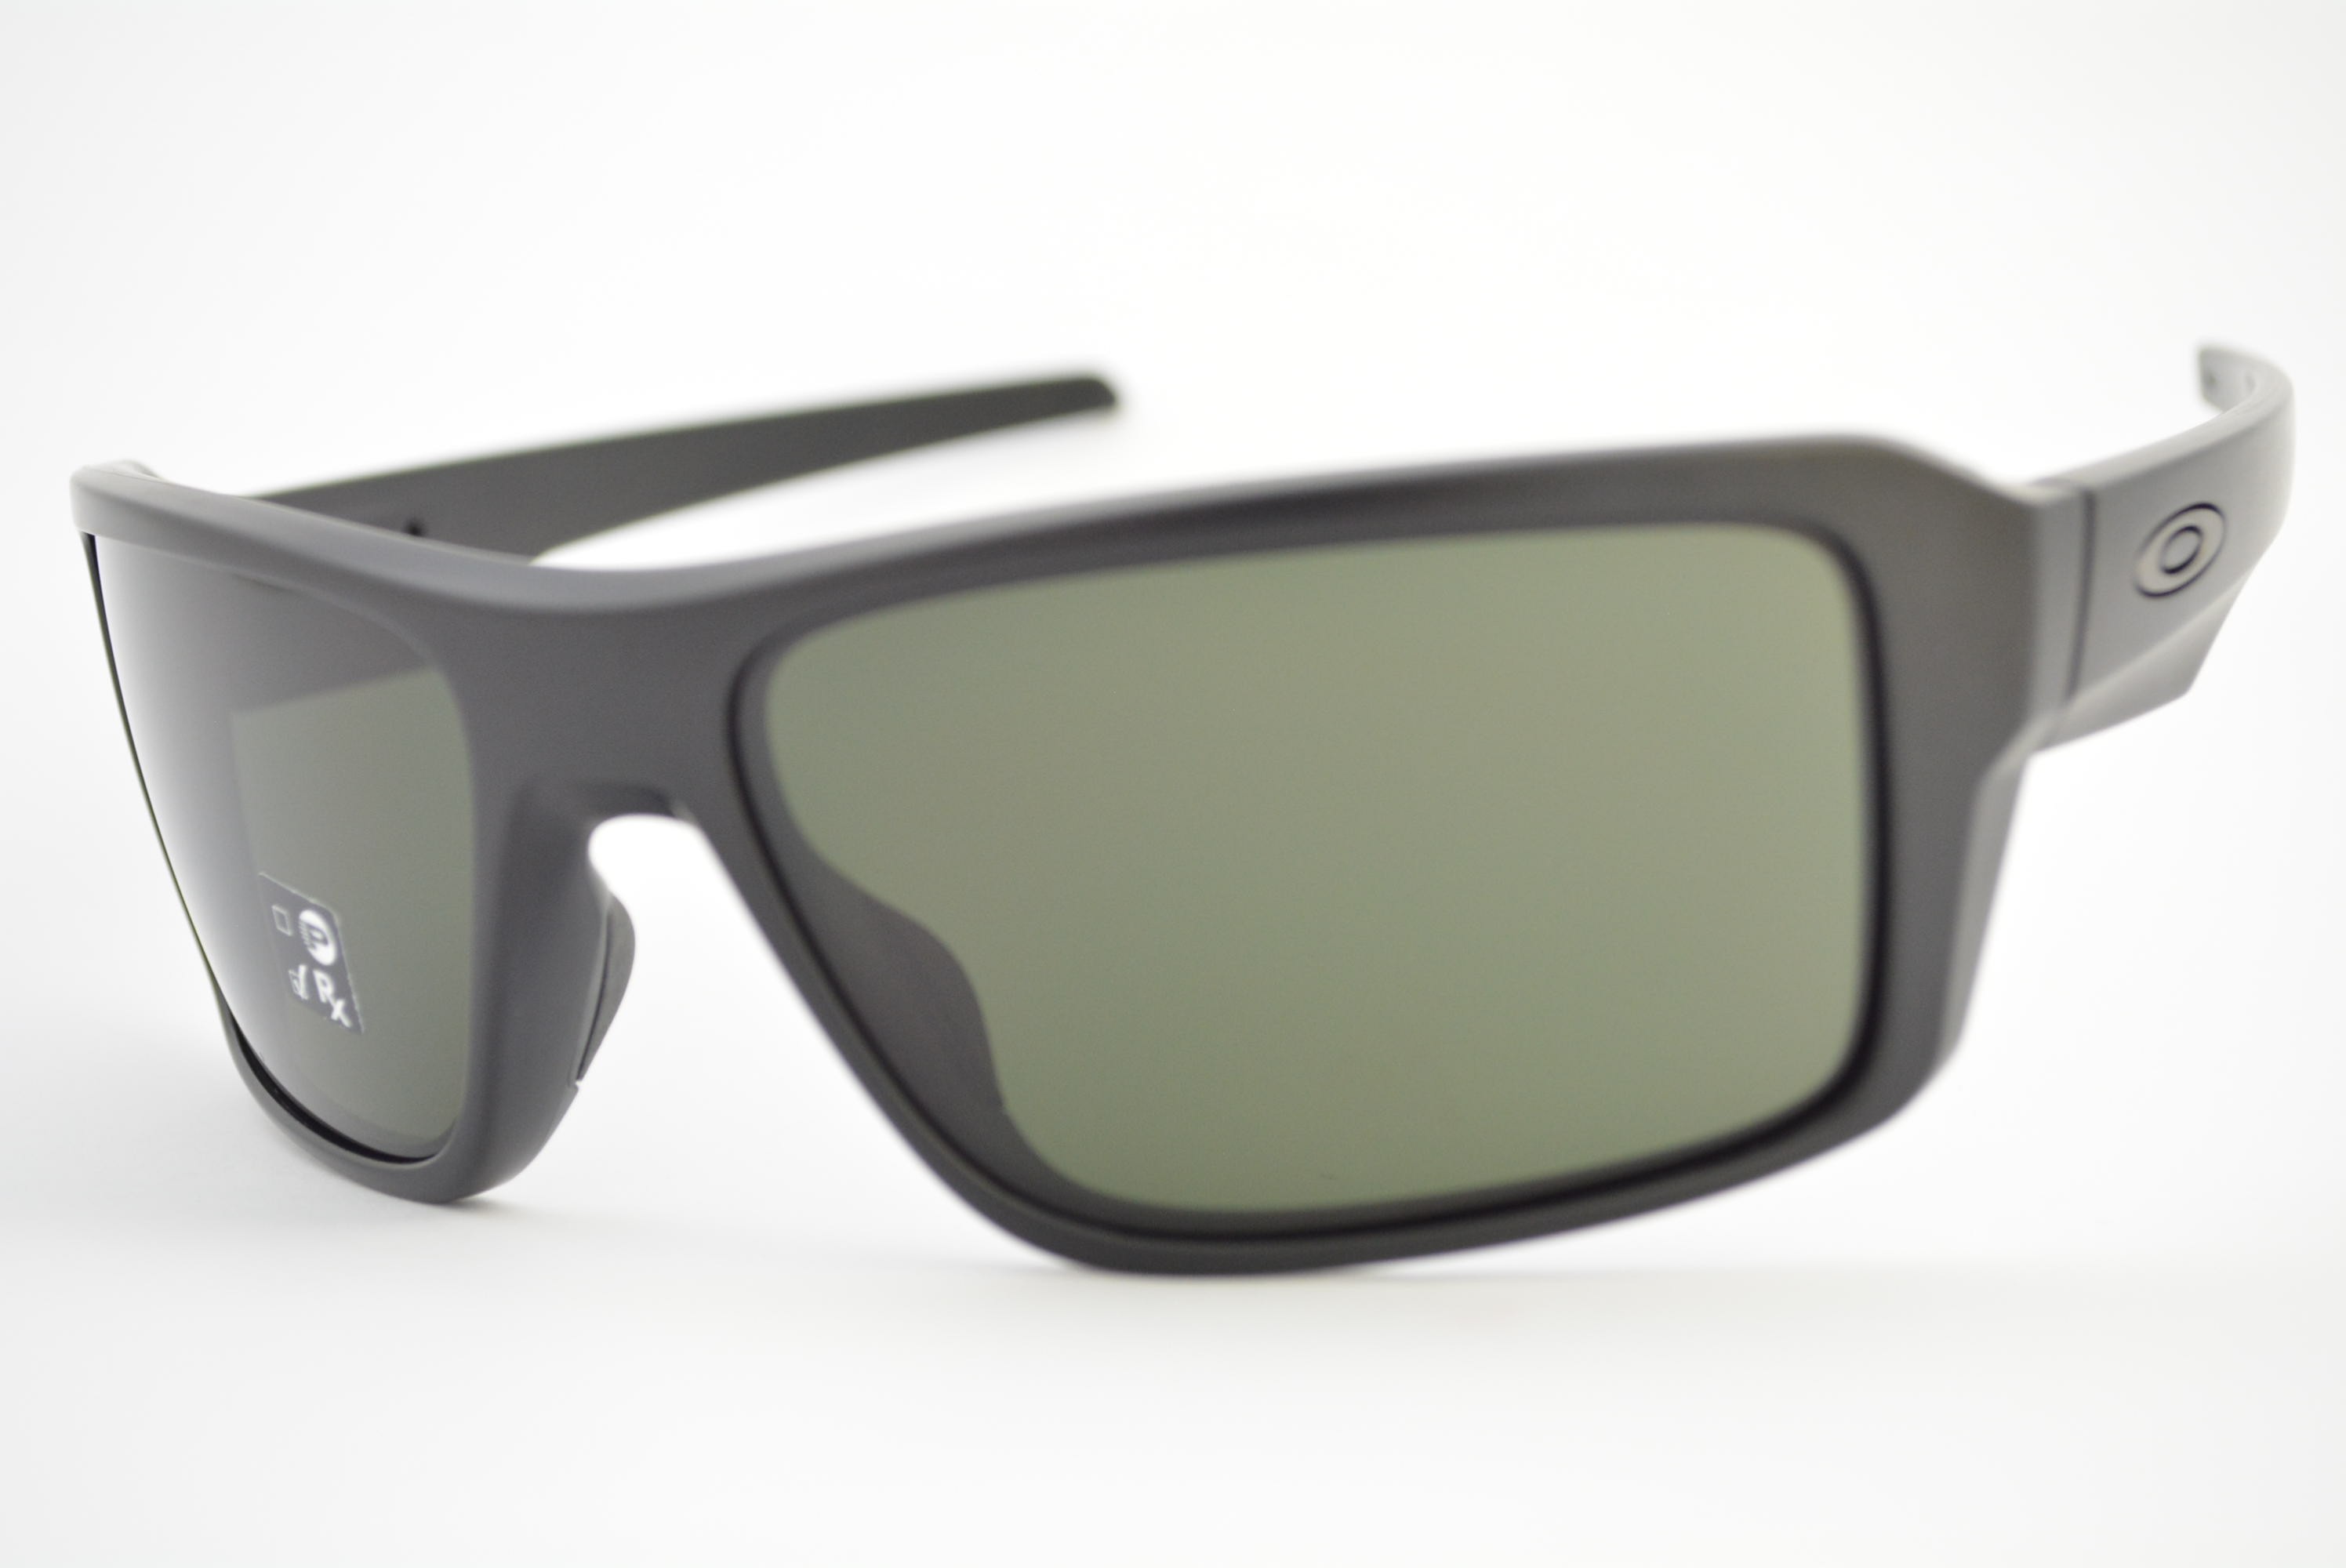 óculos de sol Oakley mod Double Edge matte black w/dark grey 9380-0166